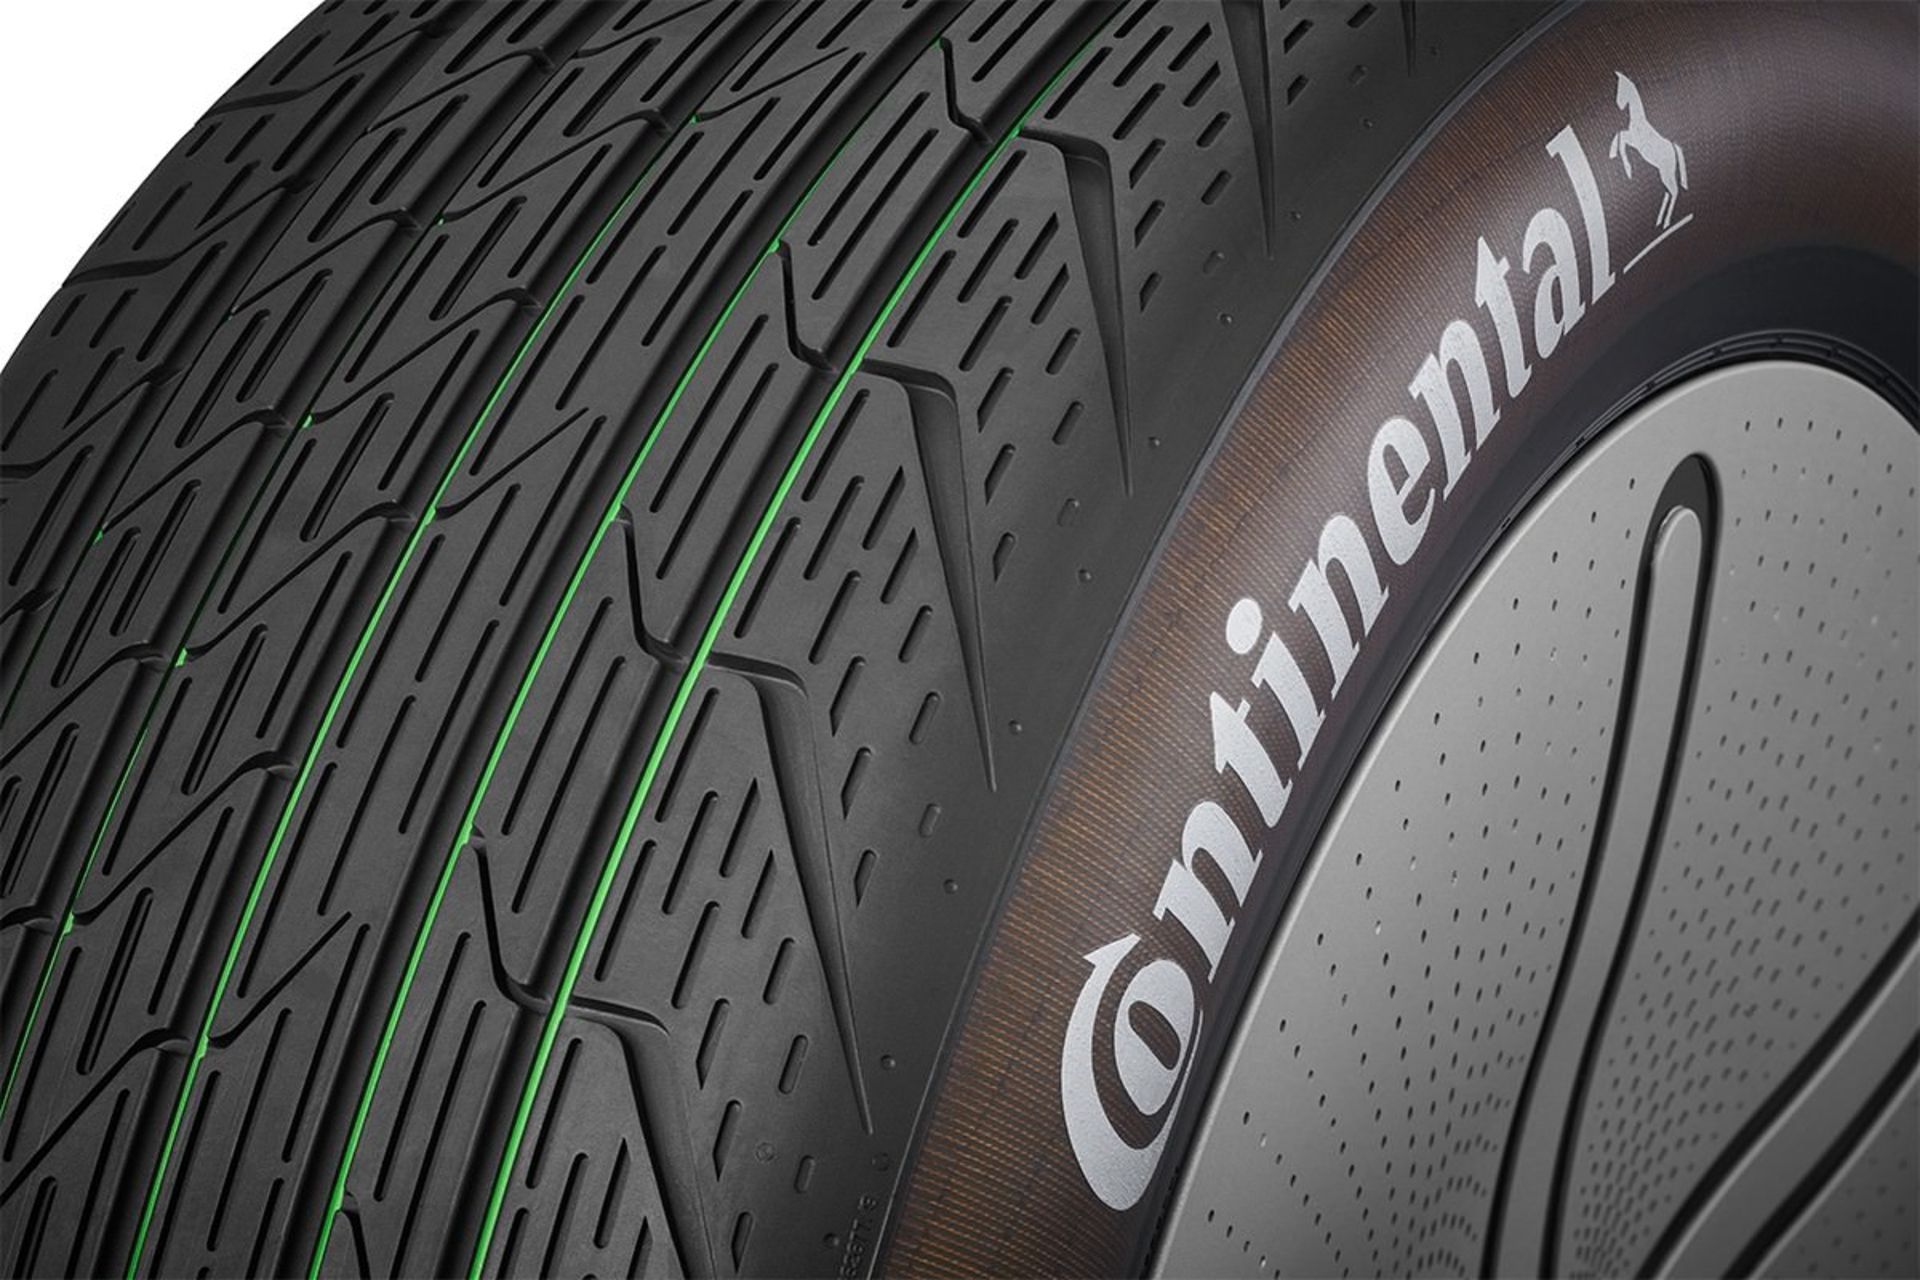 تایر مفهومی کنتیننتال / Continental GreenConcept tire با مواد بازیافتی